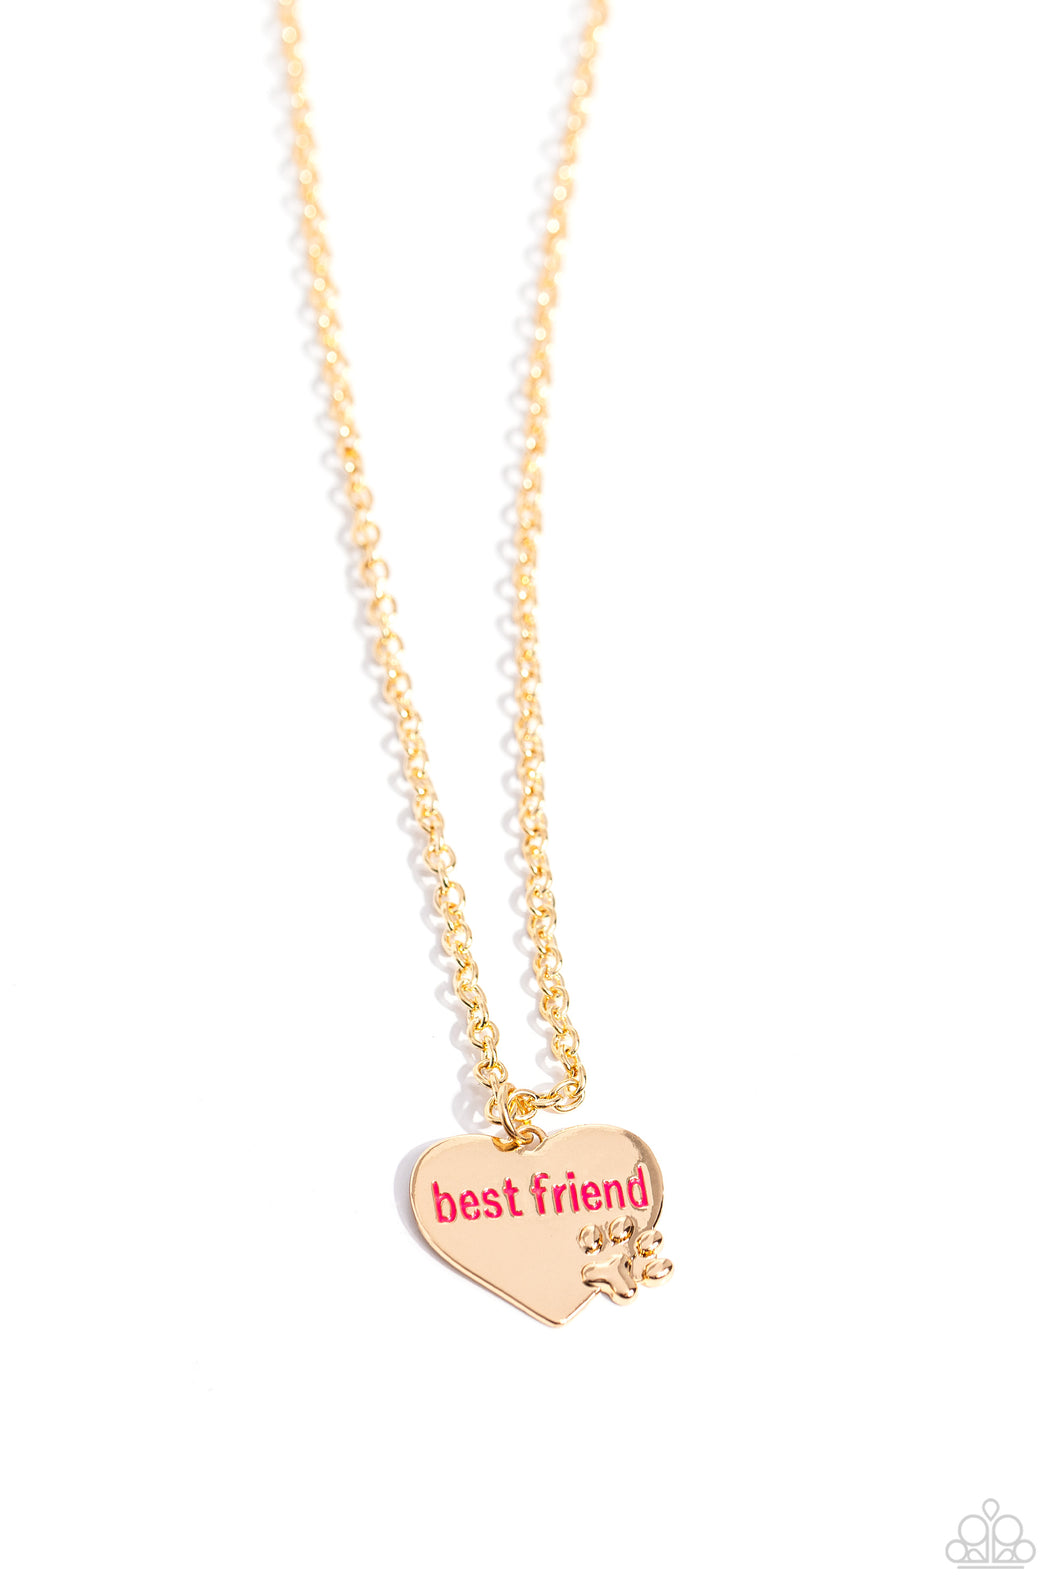 Paparazzi “Mans Best Friend” Gold Necklace Earring Set